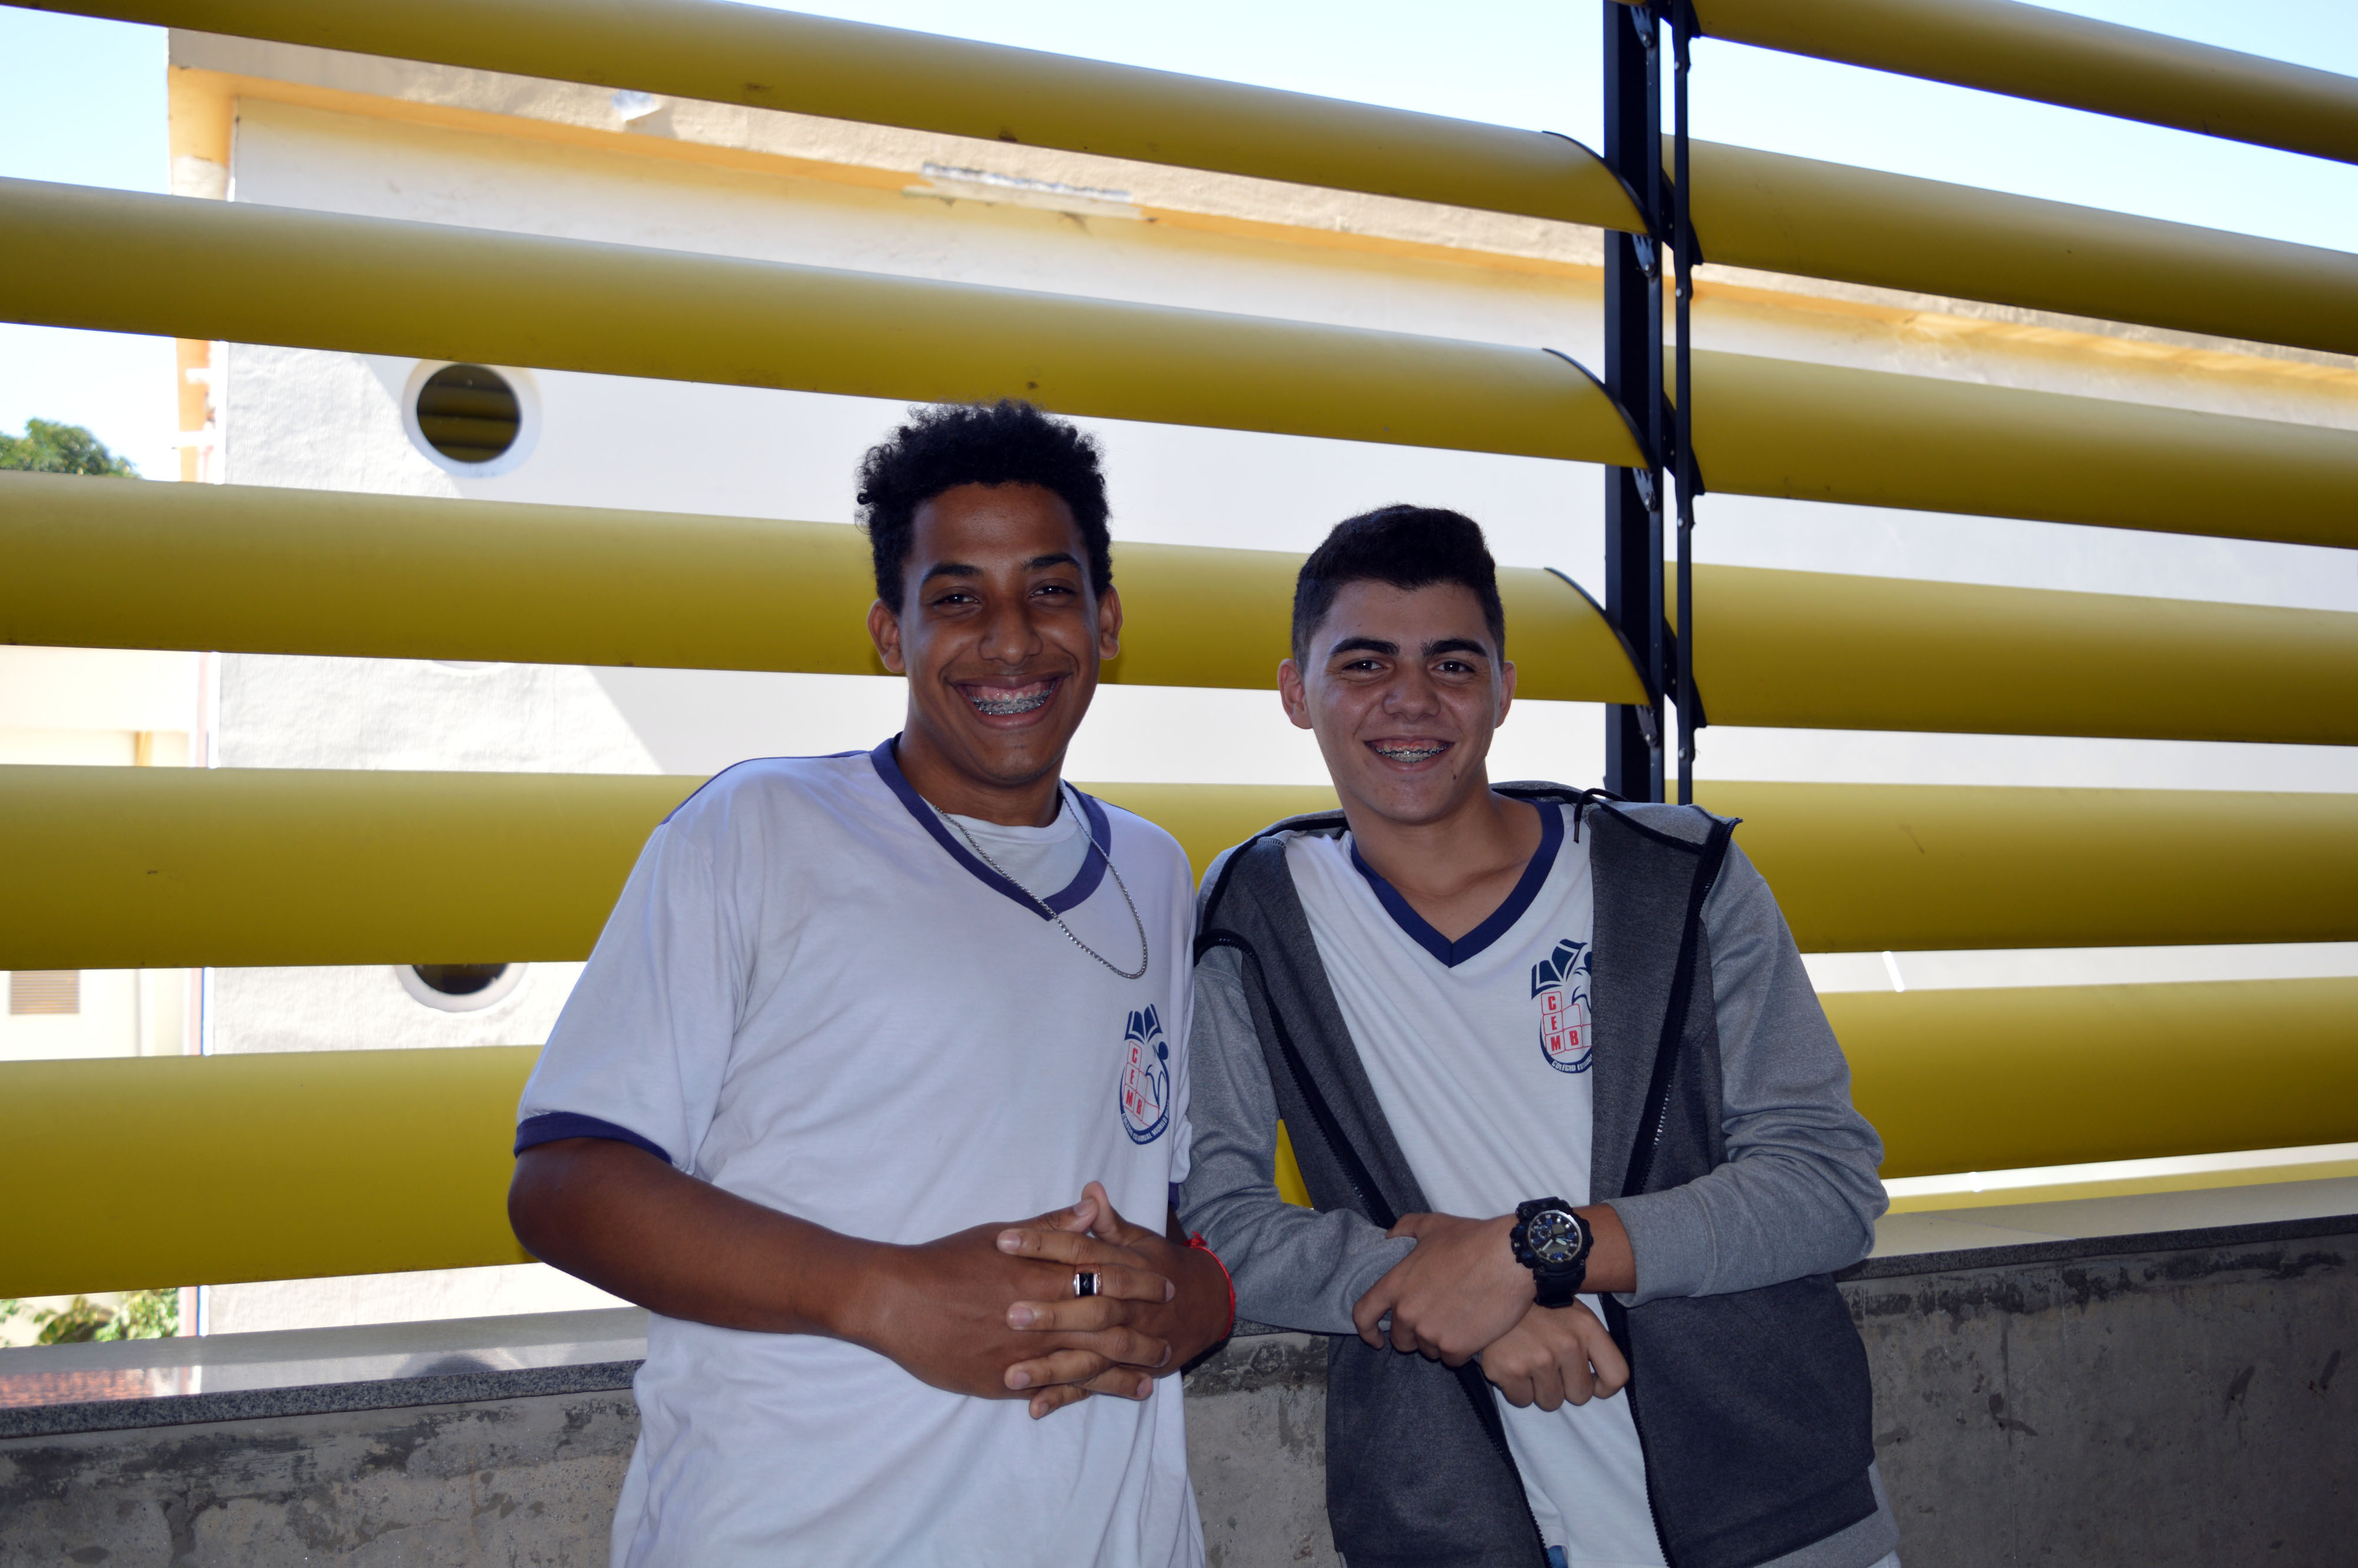 Estudantes Jonathas Conceição e Kayo Gabriel participaram da visita ao câmpus pelo projeto Conhecendo o IFG.